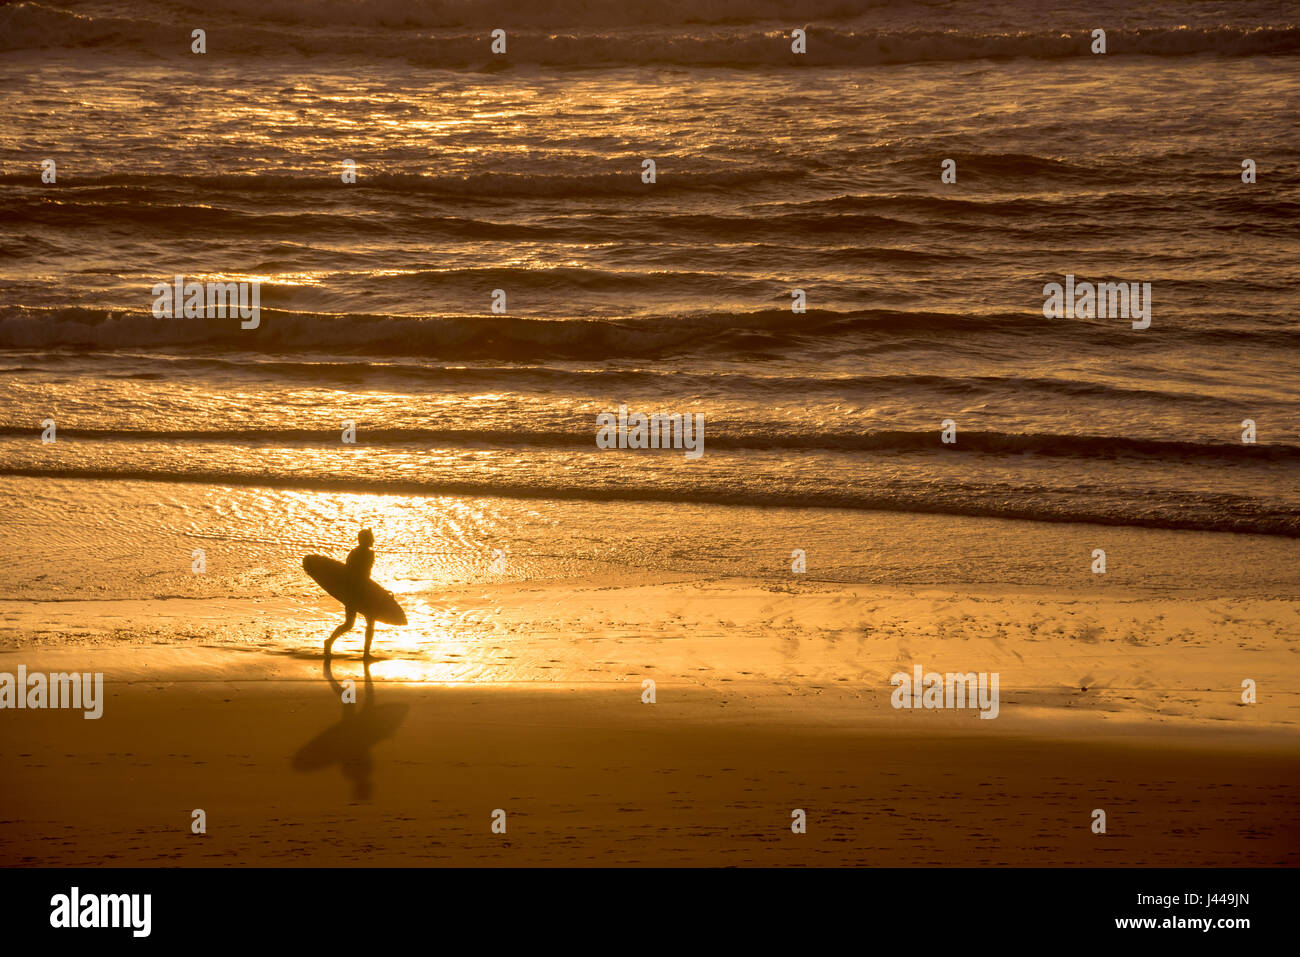 Silueta de un surfista al atardecer sobre el océano atlántico, Lacanau Francia Foto de stock